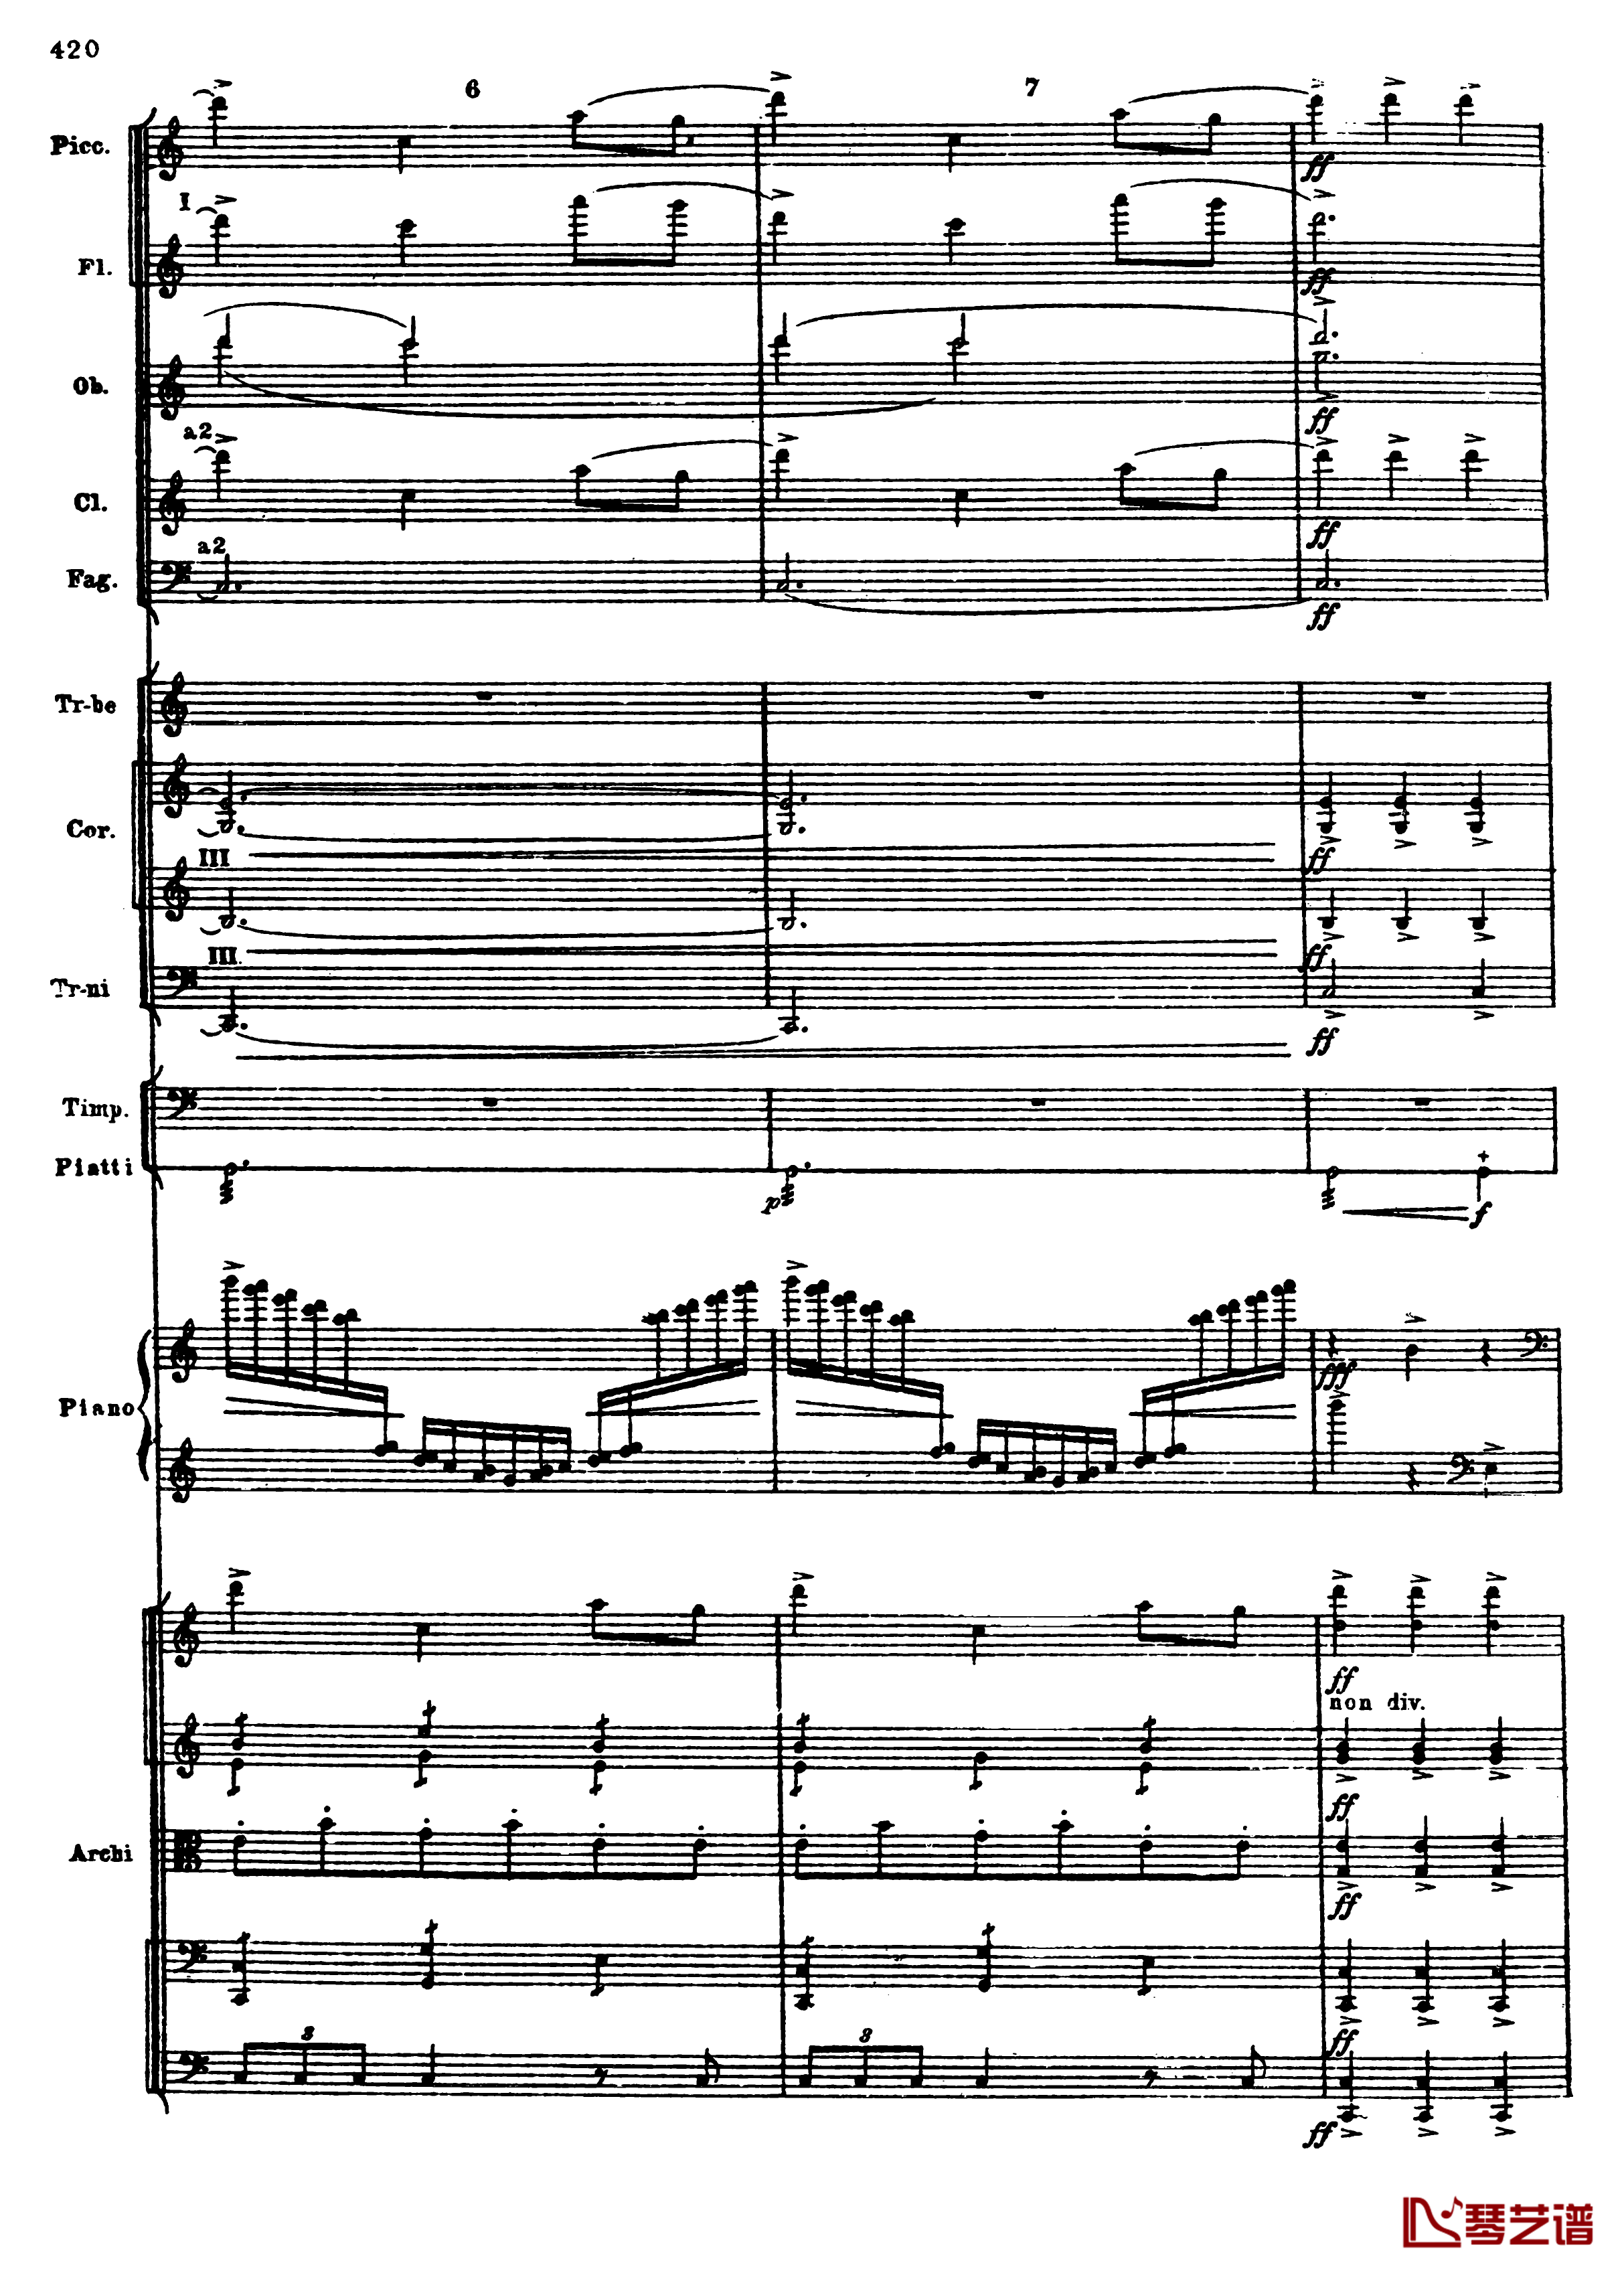 普罗科菲耶夫第三钢琴协奏曲钢琴谱-总谱-普罗科非耶夫152